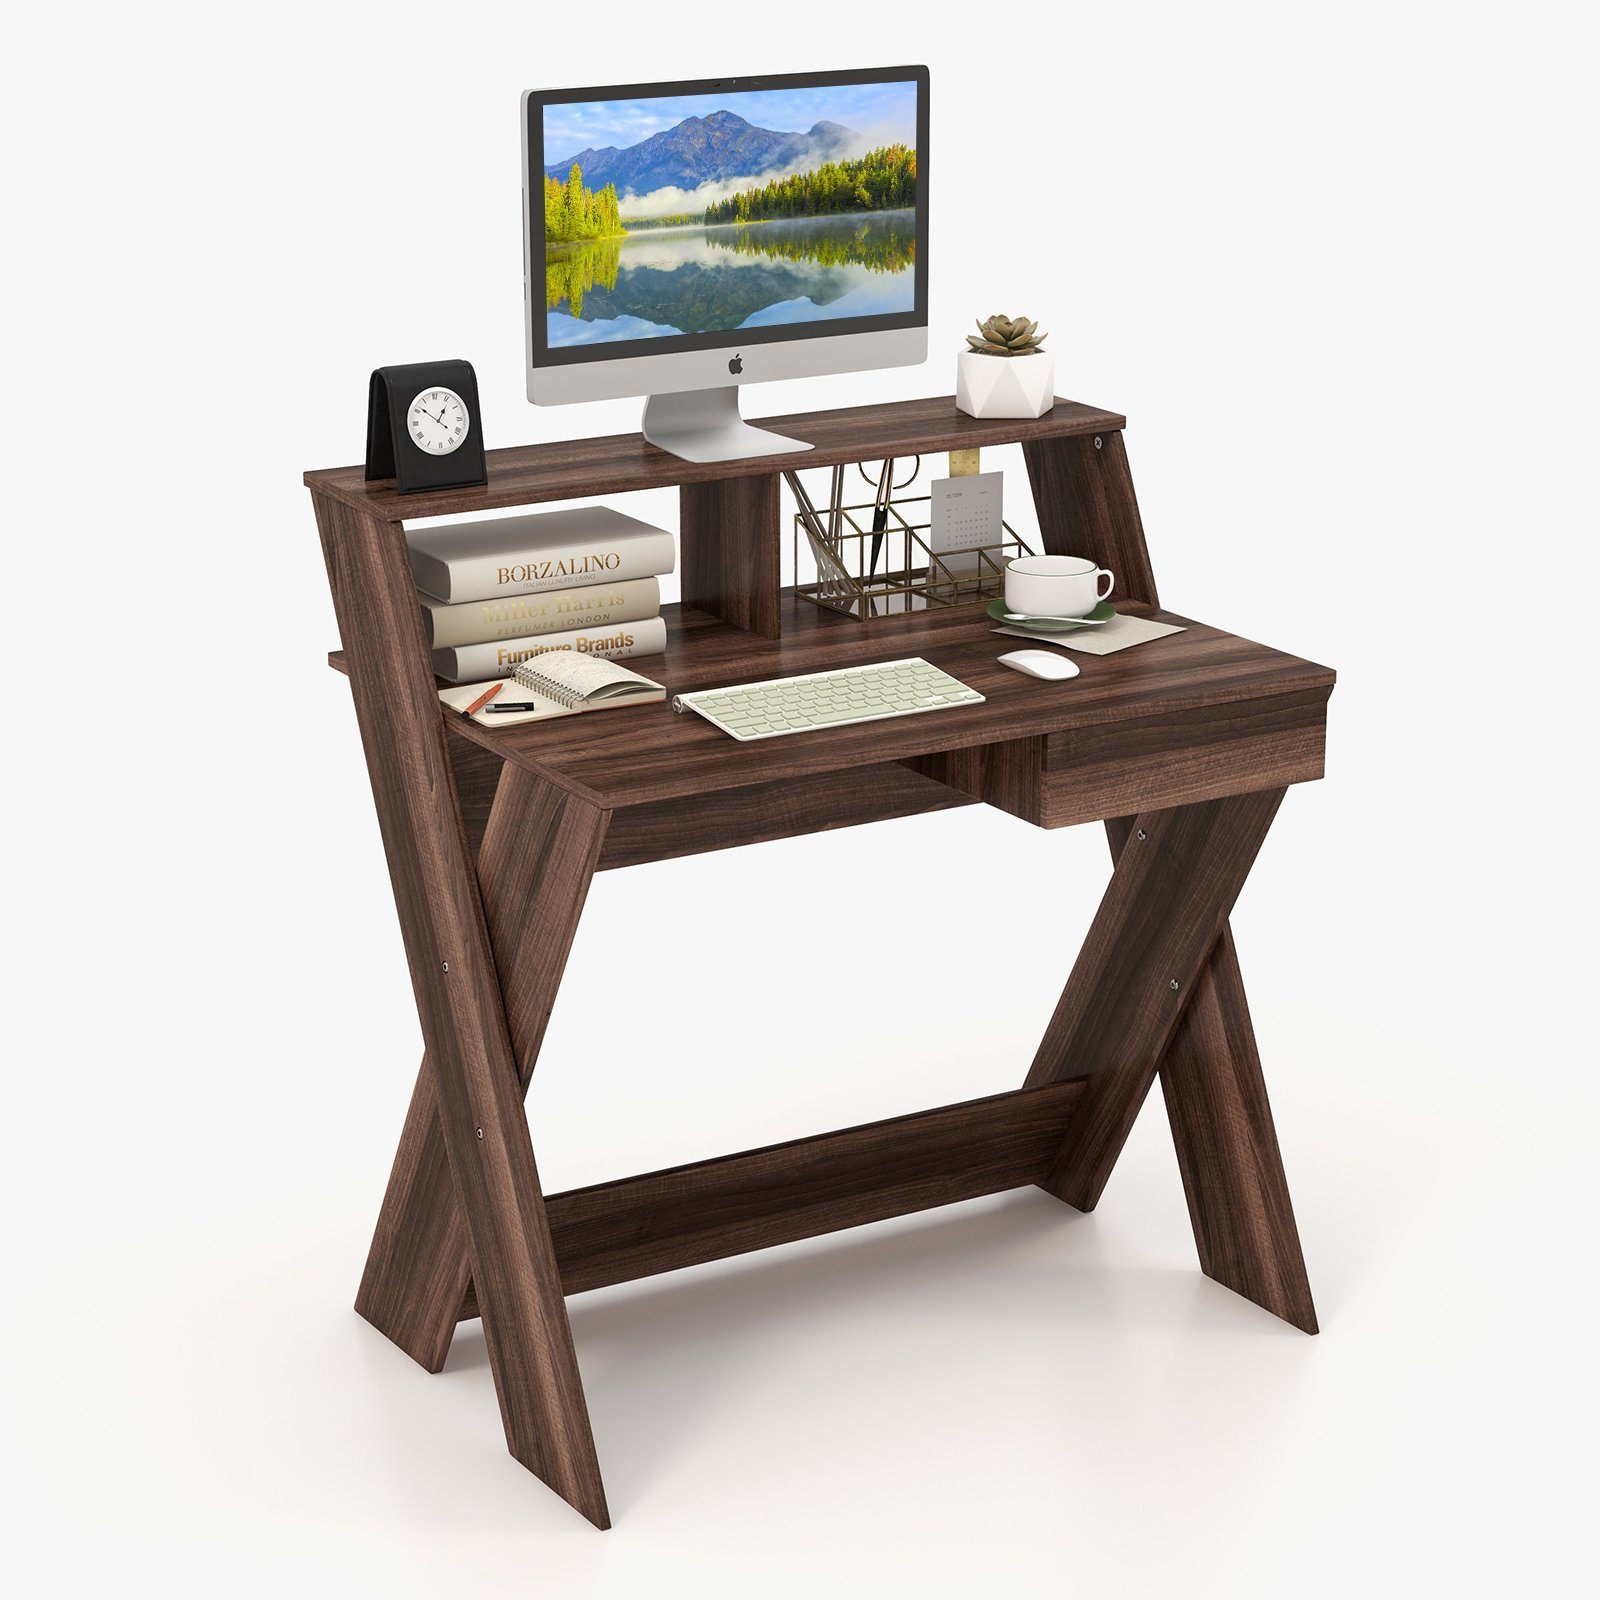 Braun Computertisch, Holz, Monitorerhöhung, mit 90x61x94cm & COSTWAY Schublade